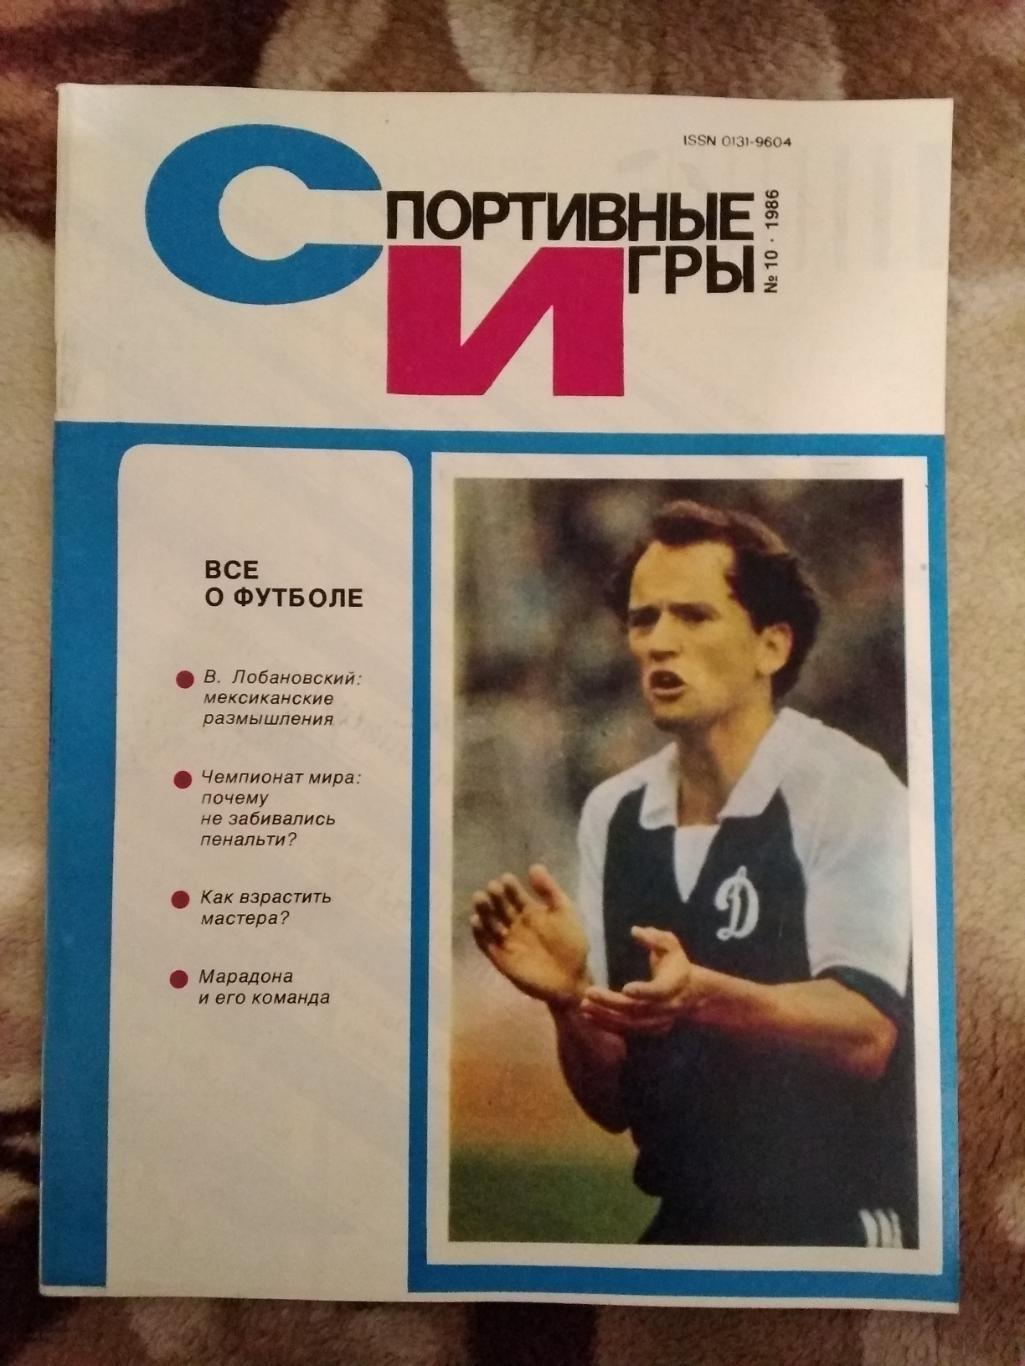 Журнал.Спортивные игры № 10 1986 г.